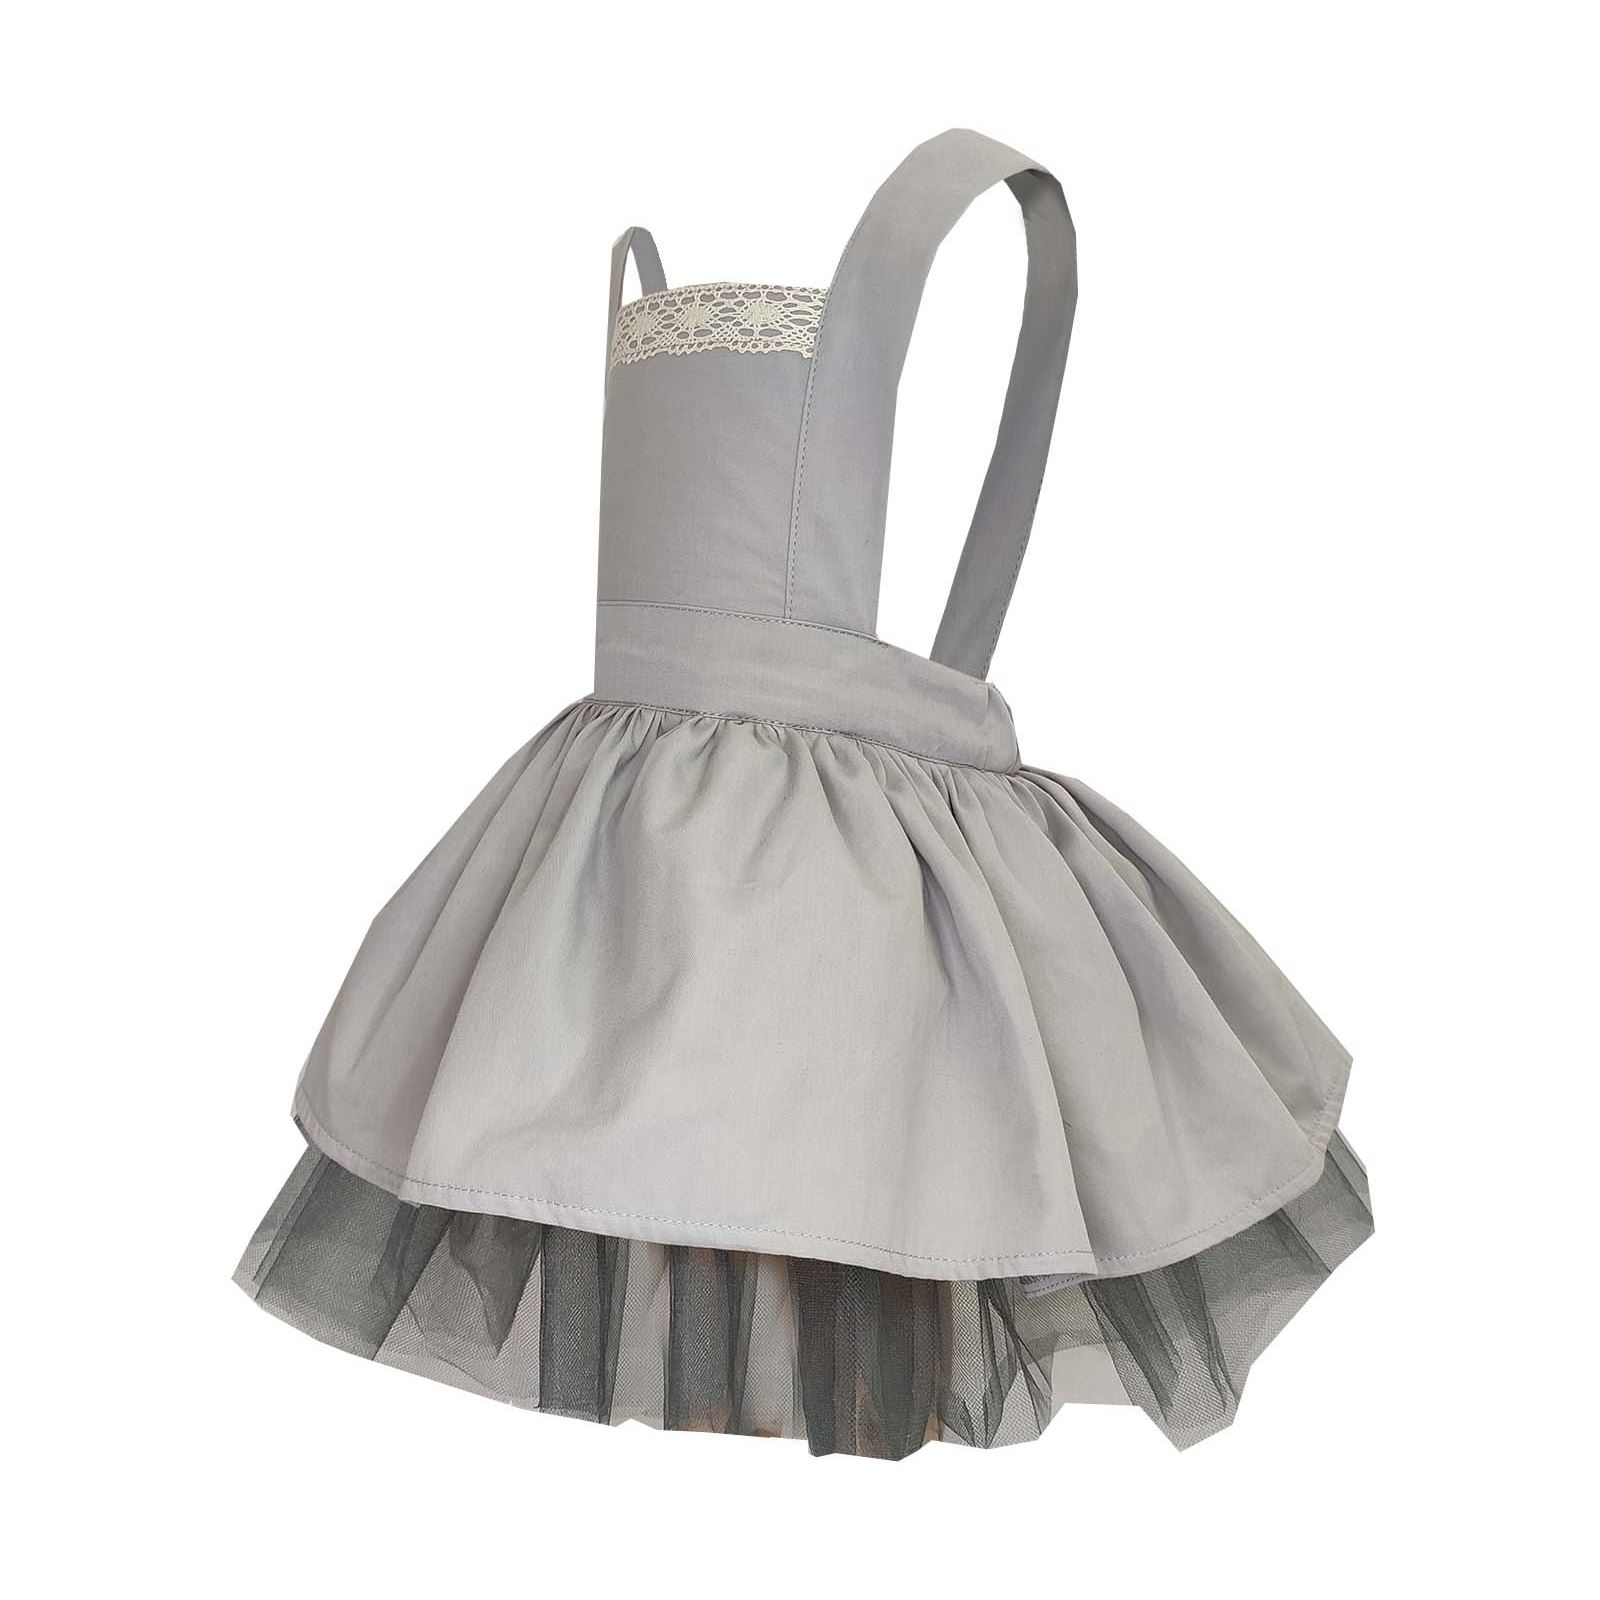 Shecco Babba Kız Çocuk Dantel Detaylı Tütü Elbise Taç Takım 6-10 Yaş Gri